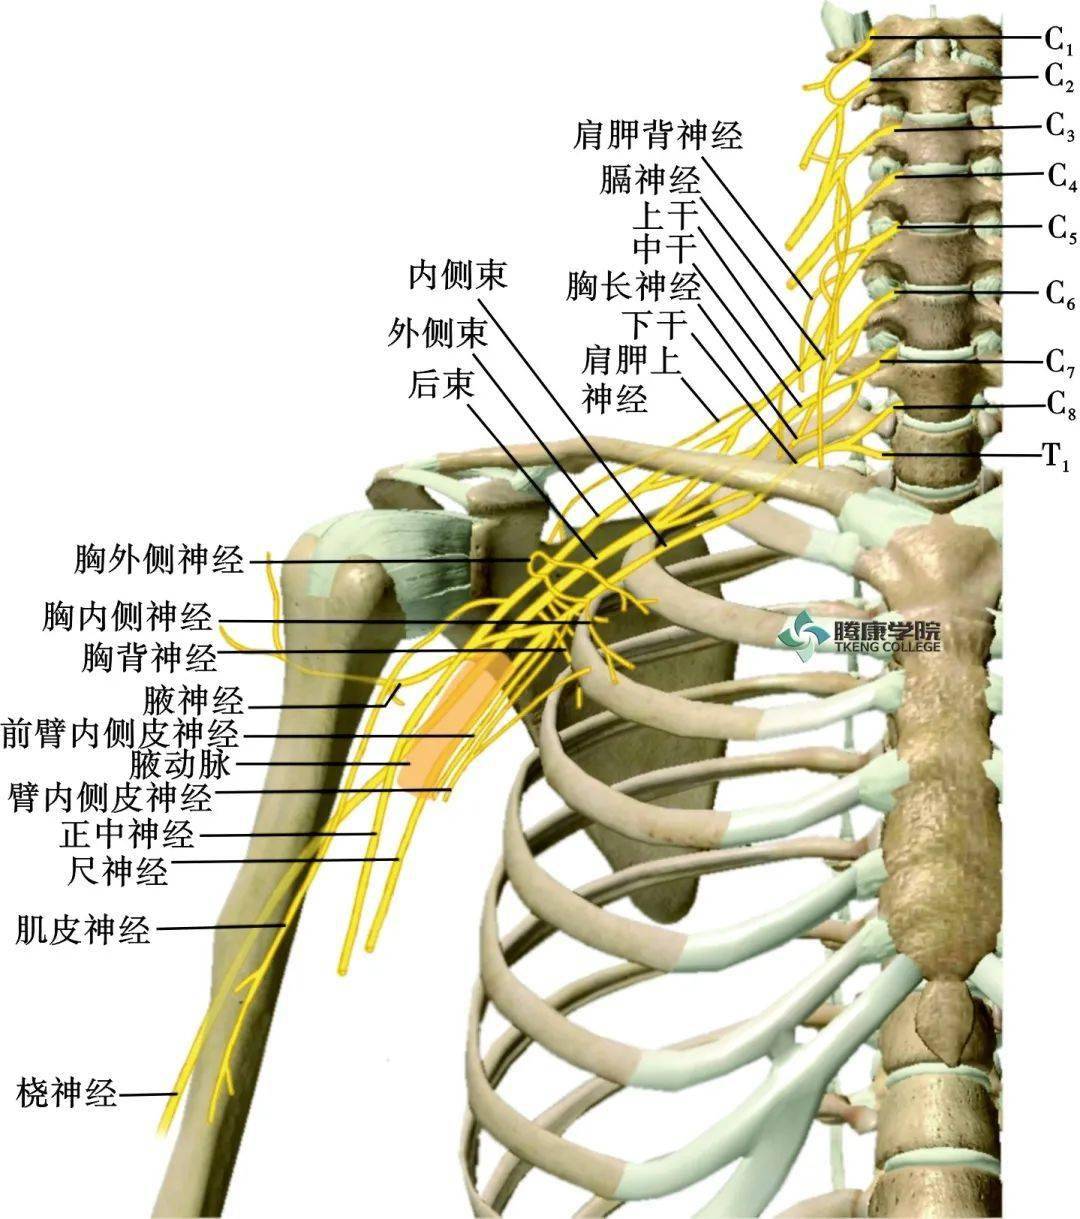 臂丛神经位置图片图片